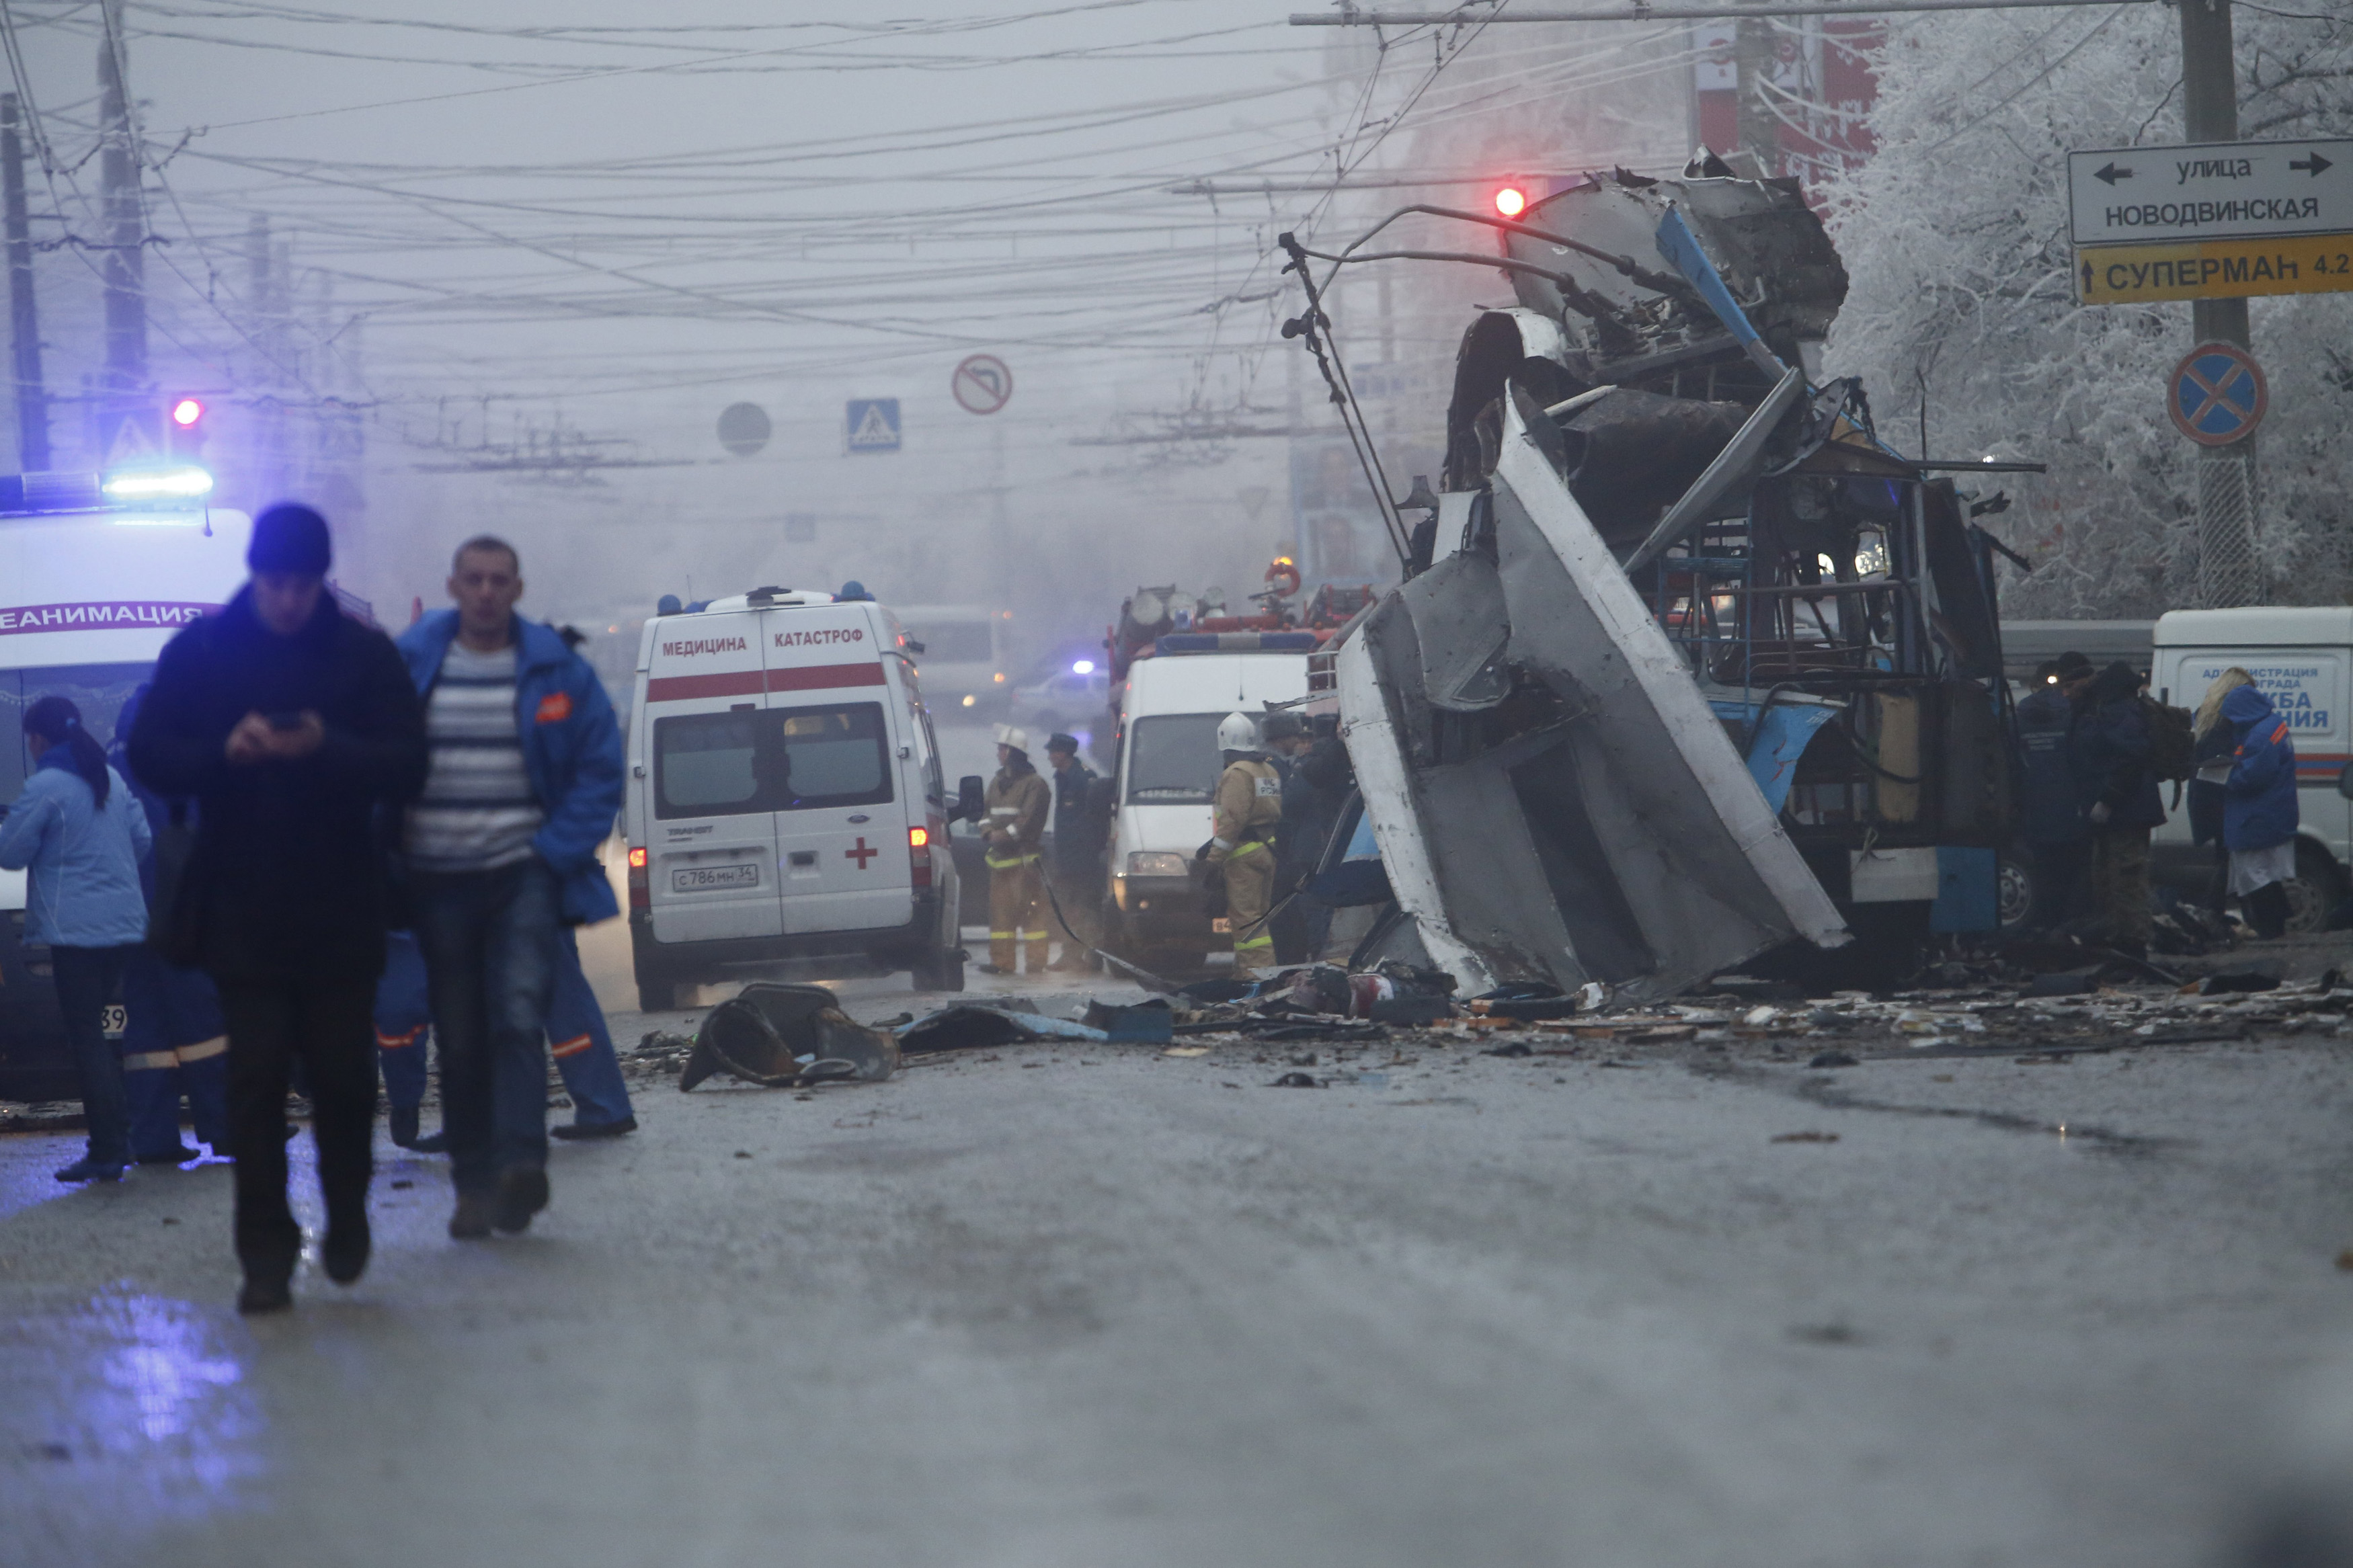 Последние новости по поводу теракта в москве. Взрыв троллейбуса в Волгограде.